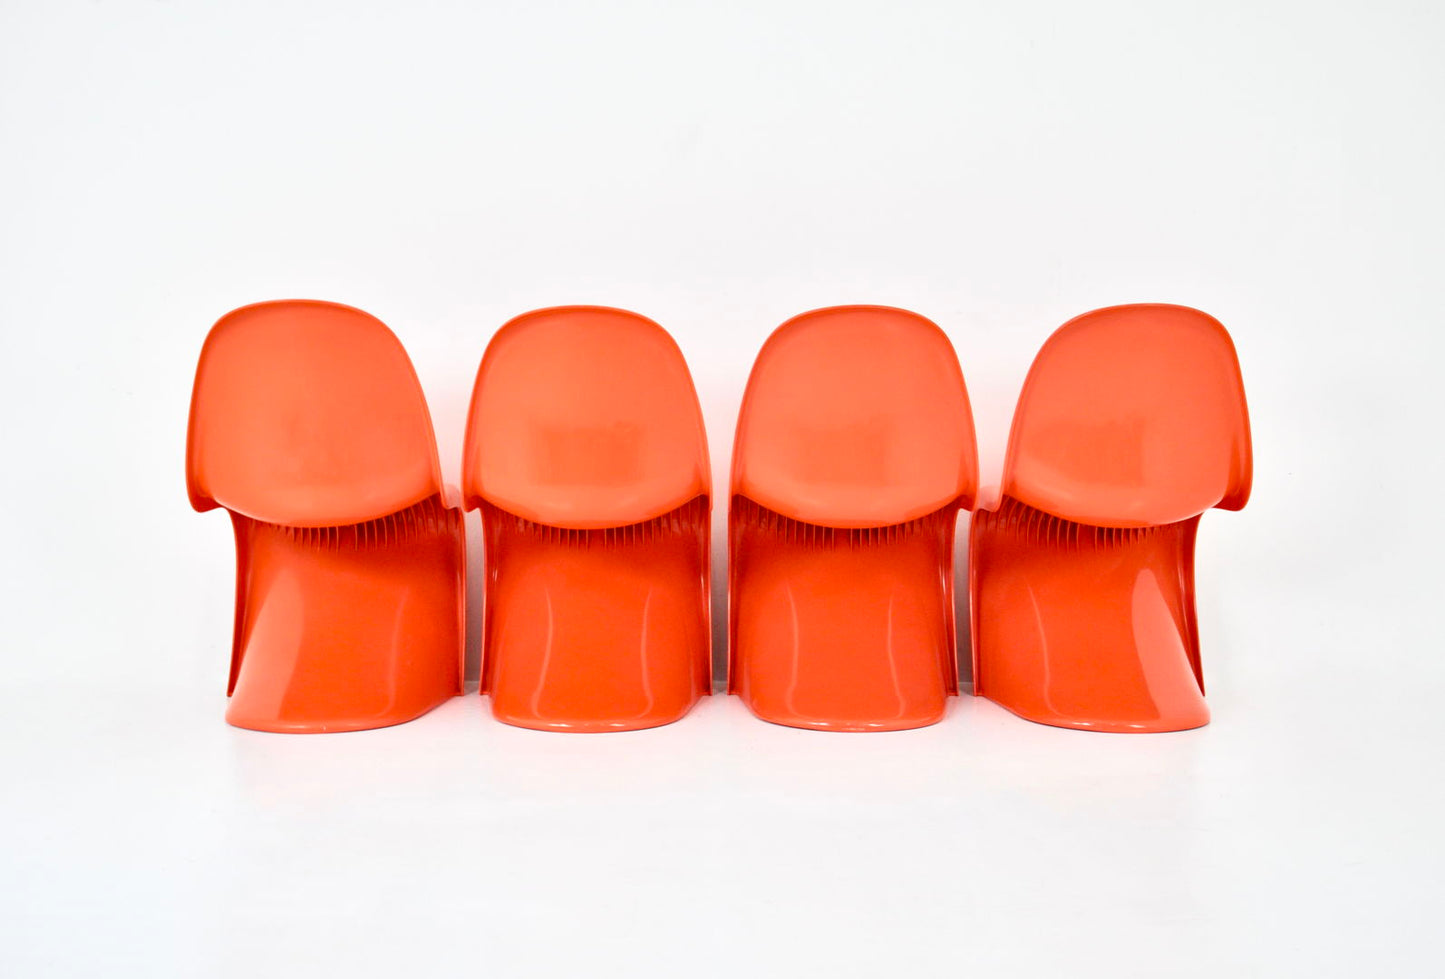 Panton chairs by Verner Panton for Herman Miller / Felhbaum, 1970s